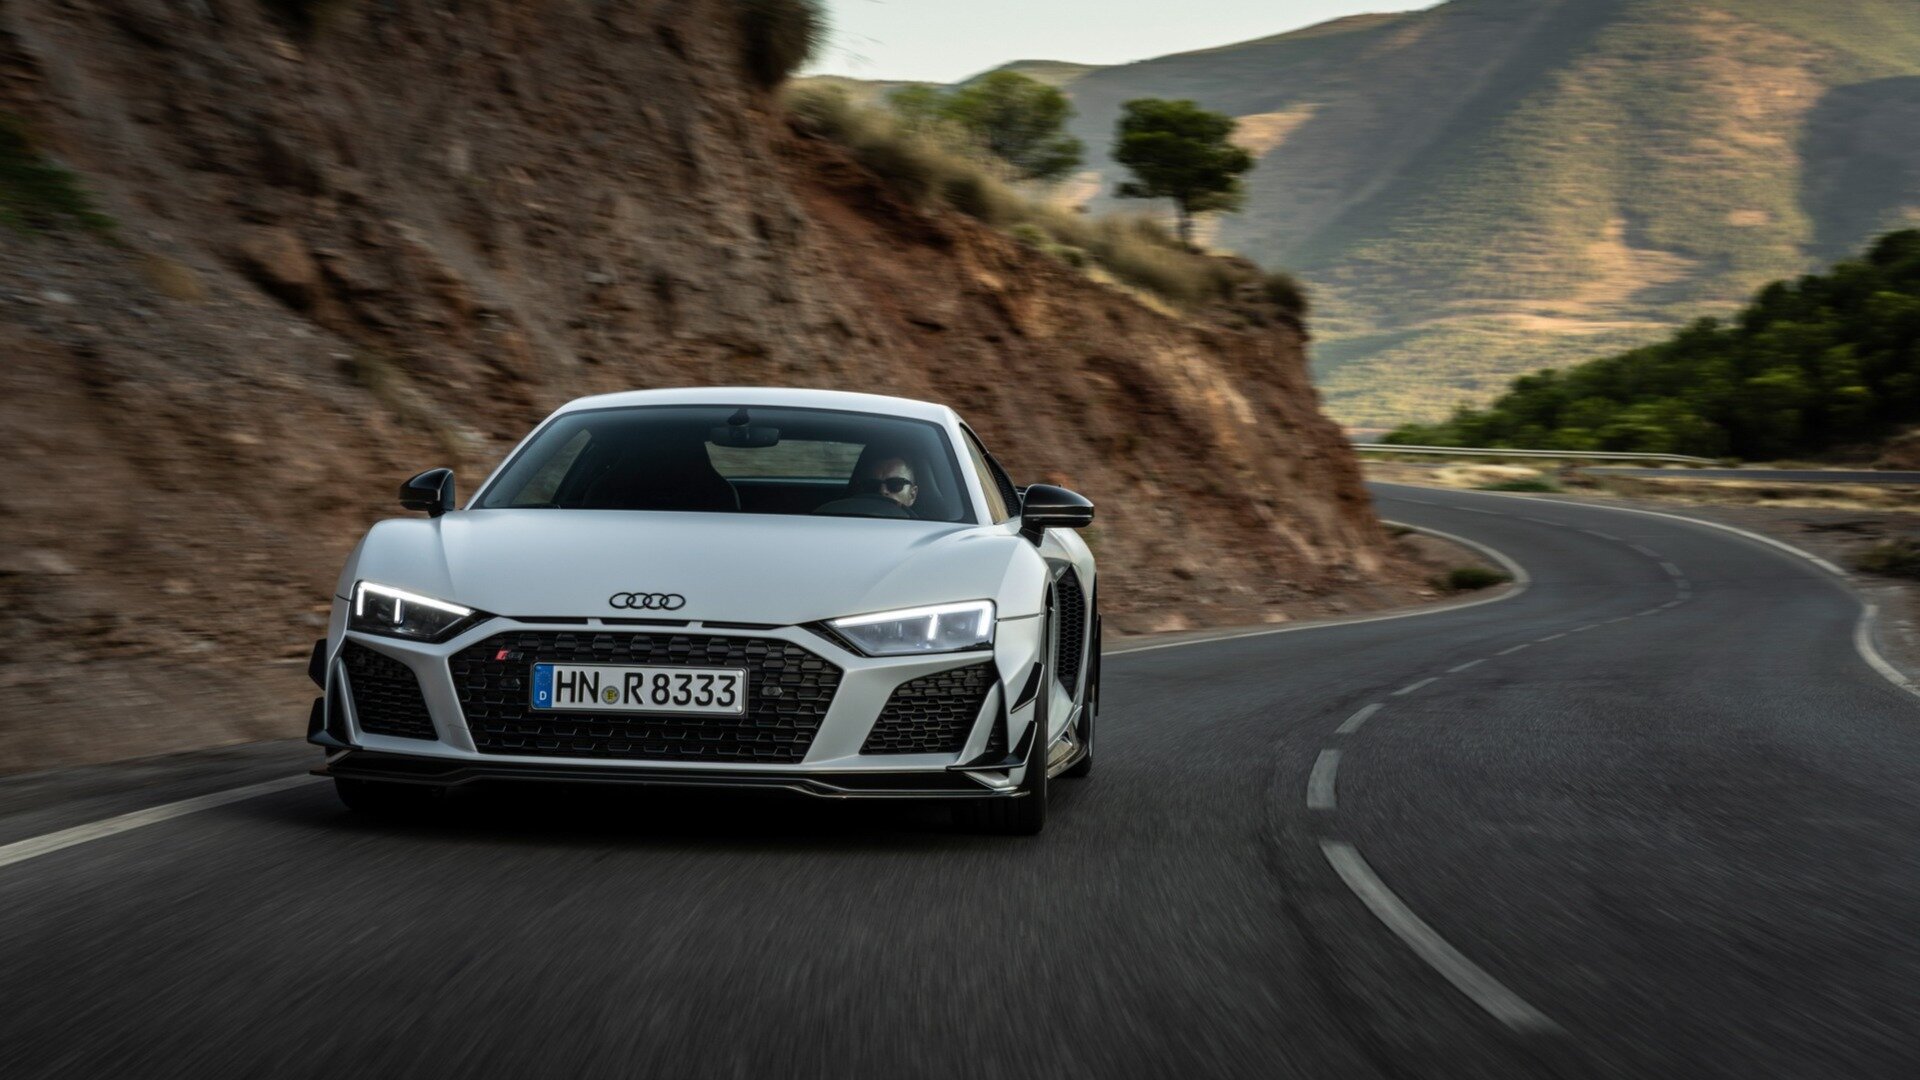 Audi представила самую мощную заднеприводную версию R8 с дрифт-режимом и ценой 225 000 евро